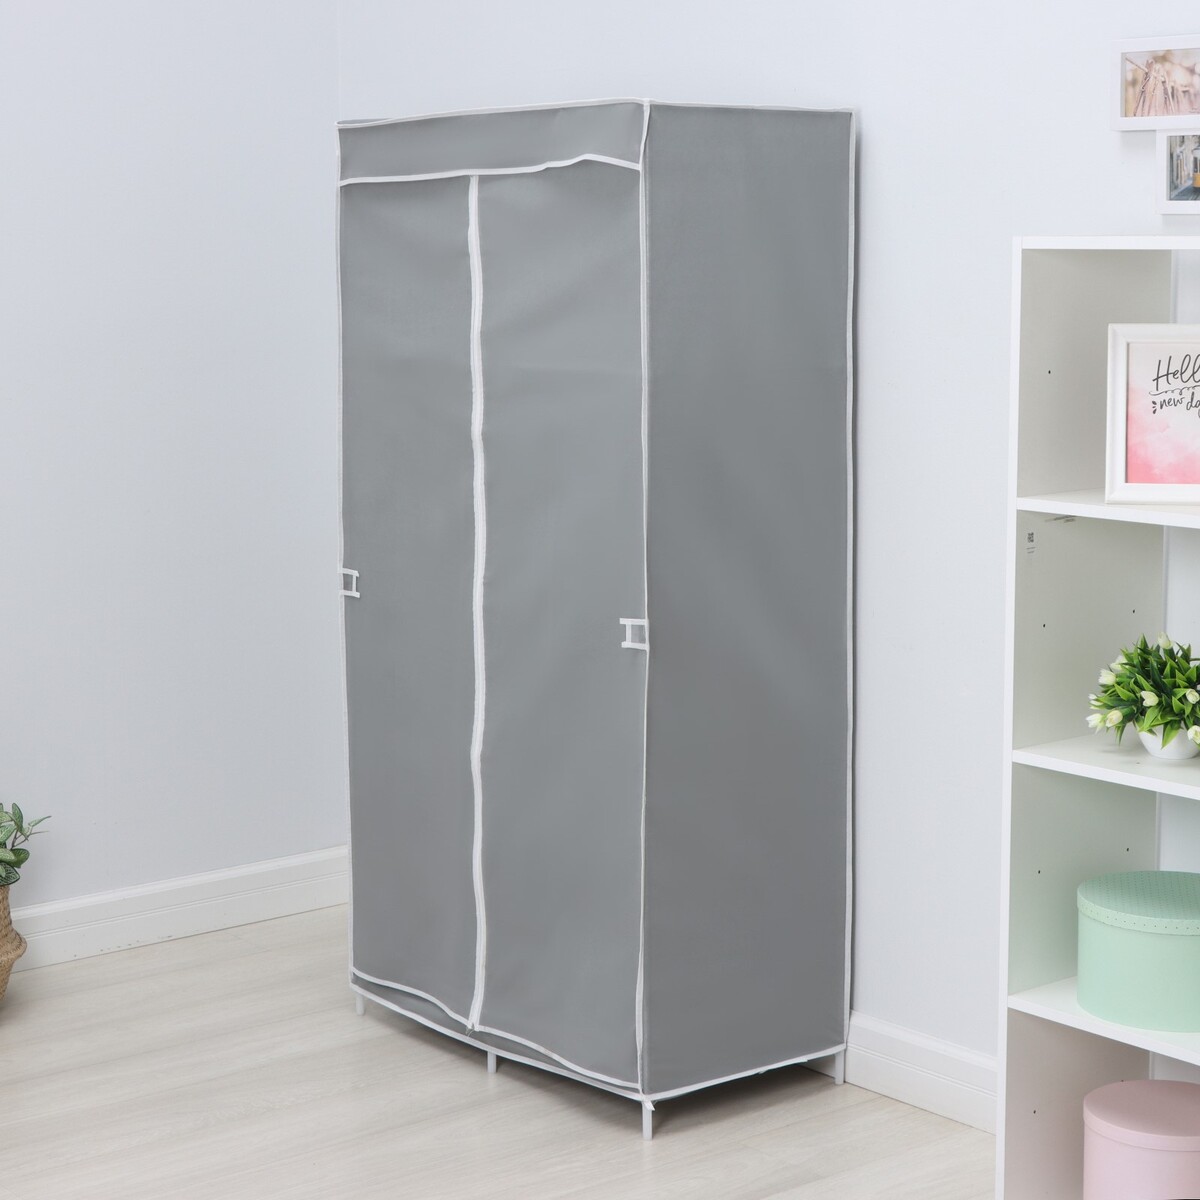 Шкаф тканевый каркасный, складной ladо́m, 83×45×160 см, цвет серый шкаф тканевый каркасный складной ladо́m 83×45×160 см серый